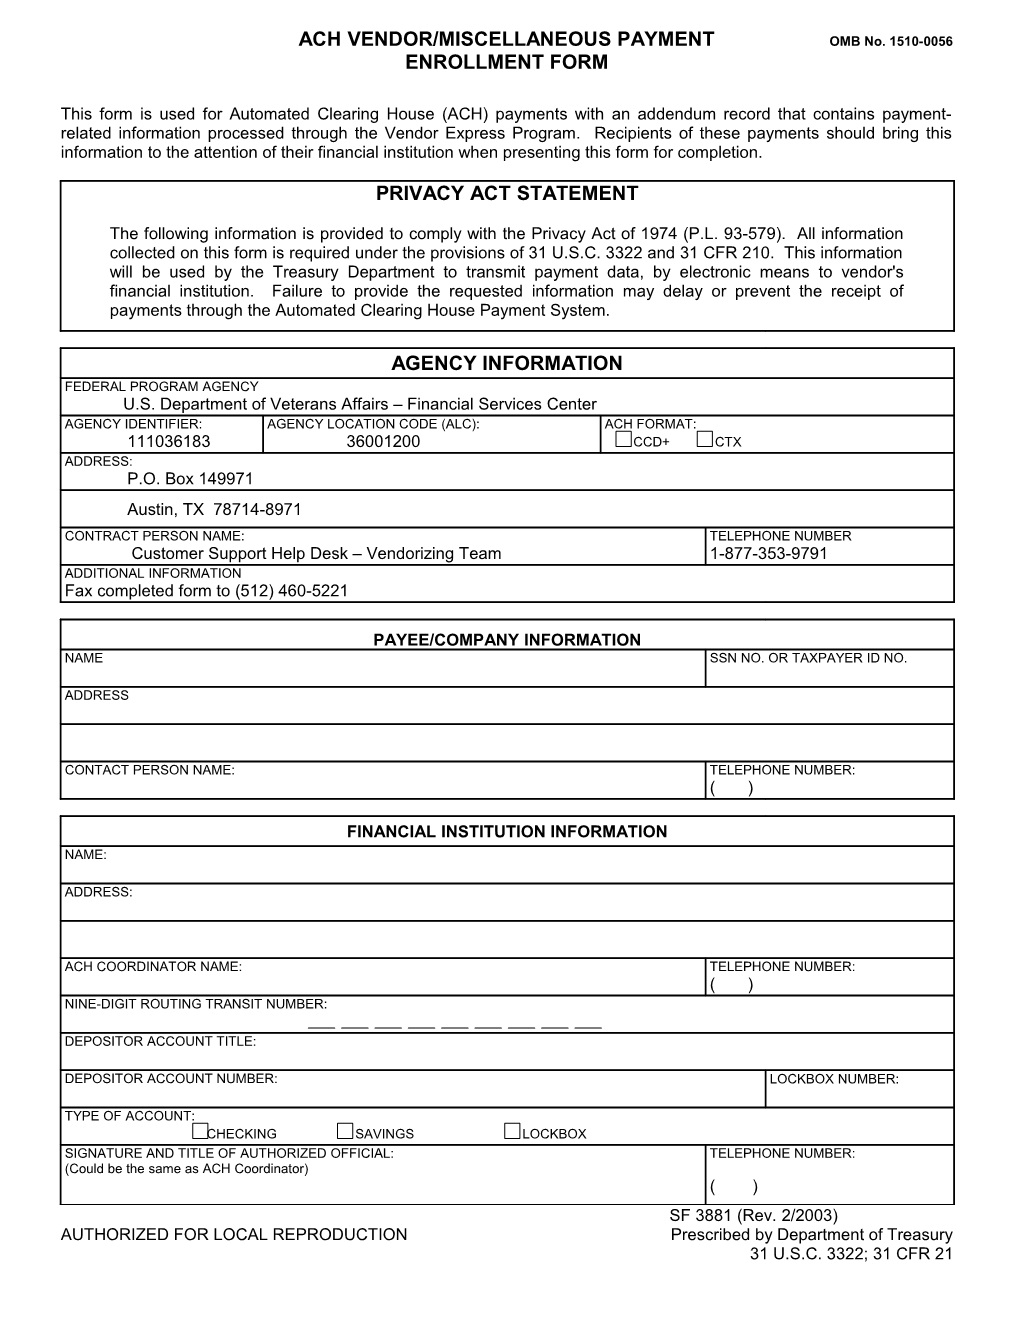 Standard Form 3881 ACH Vendor/Miscellaneous Payment Enrollment Form